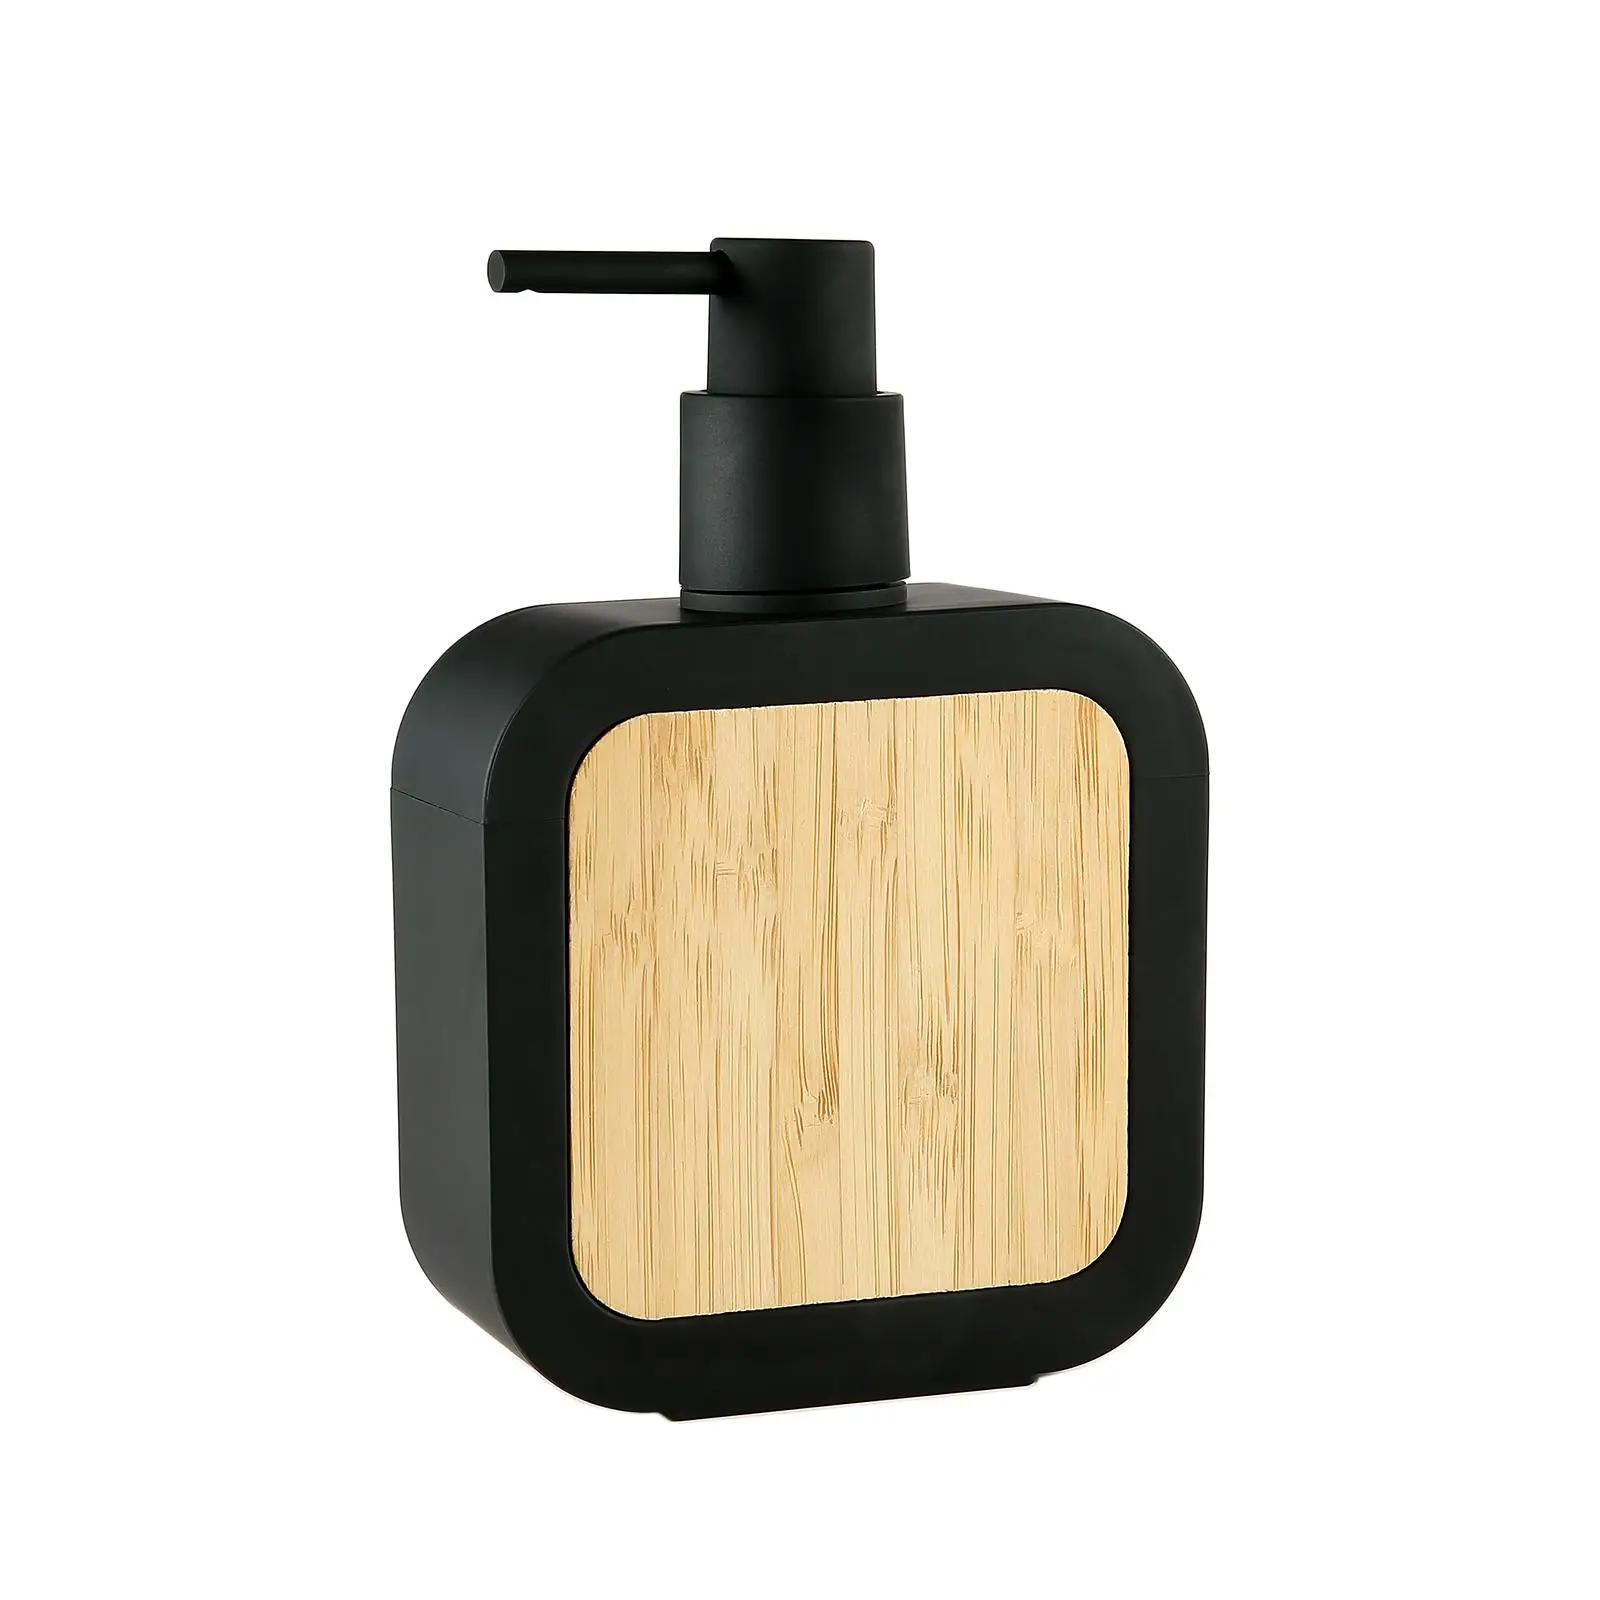 13oz Manual Soap Dispenser Refillable Liquid Soap Dispenser Kitchen Pump Bottle